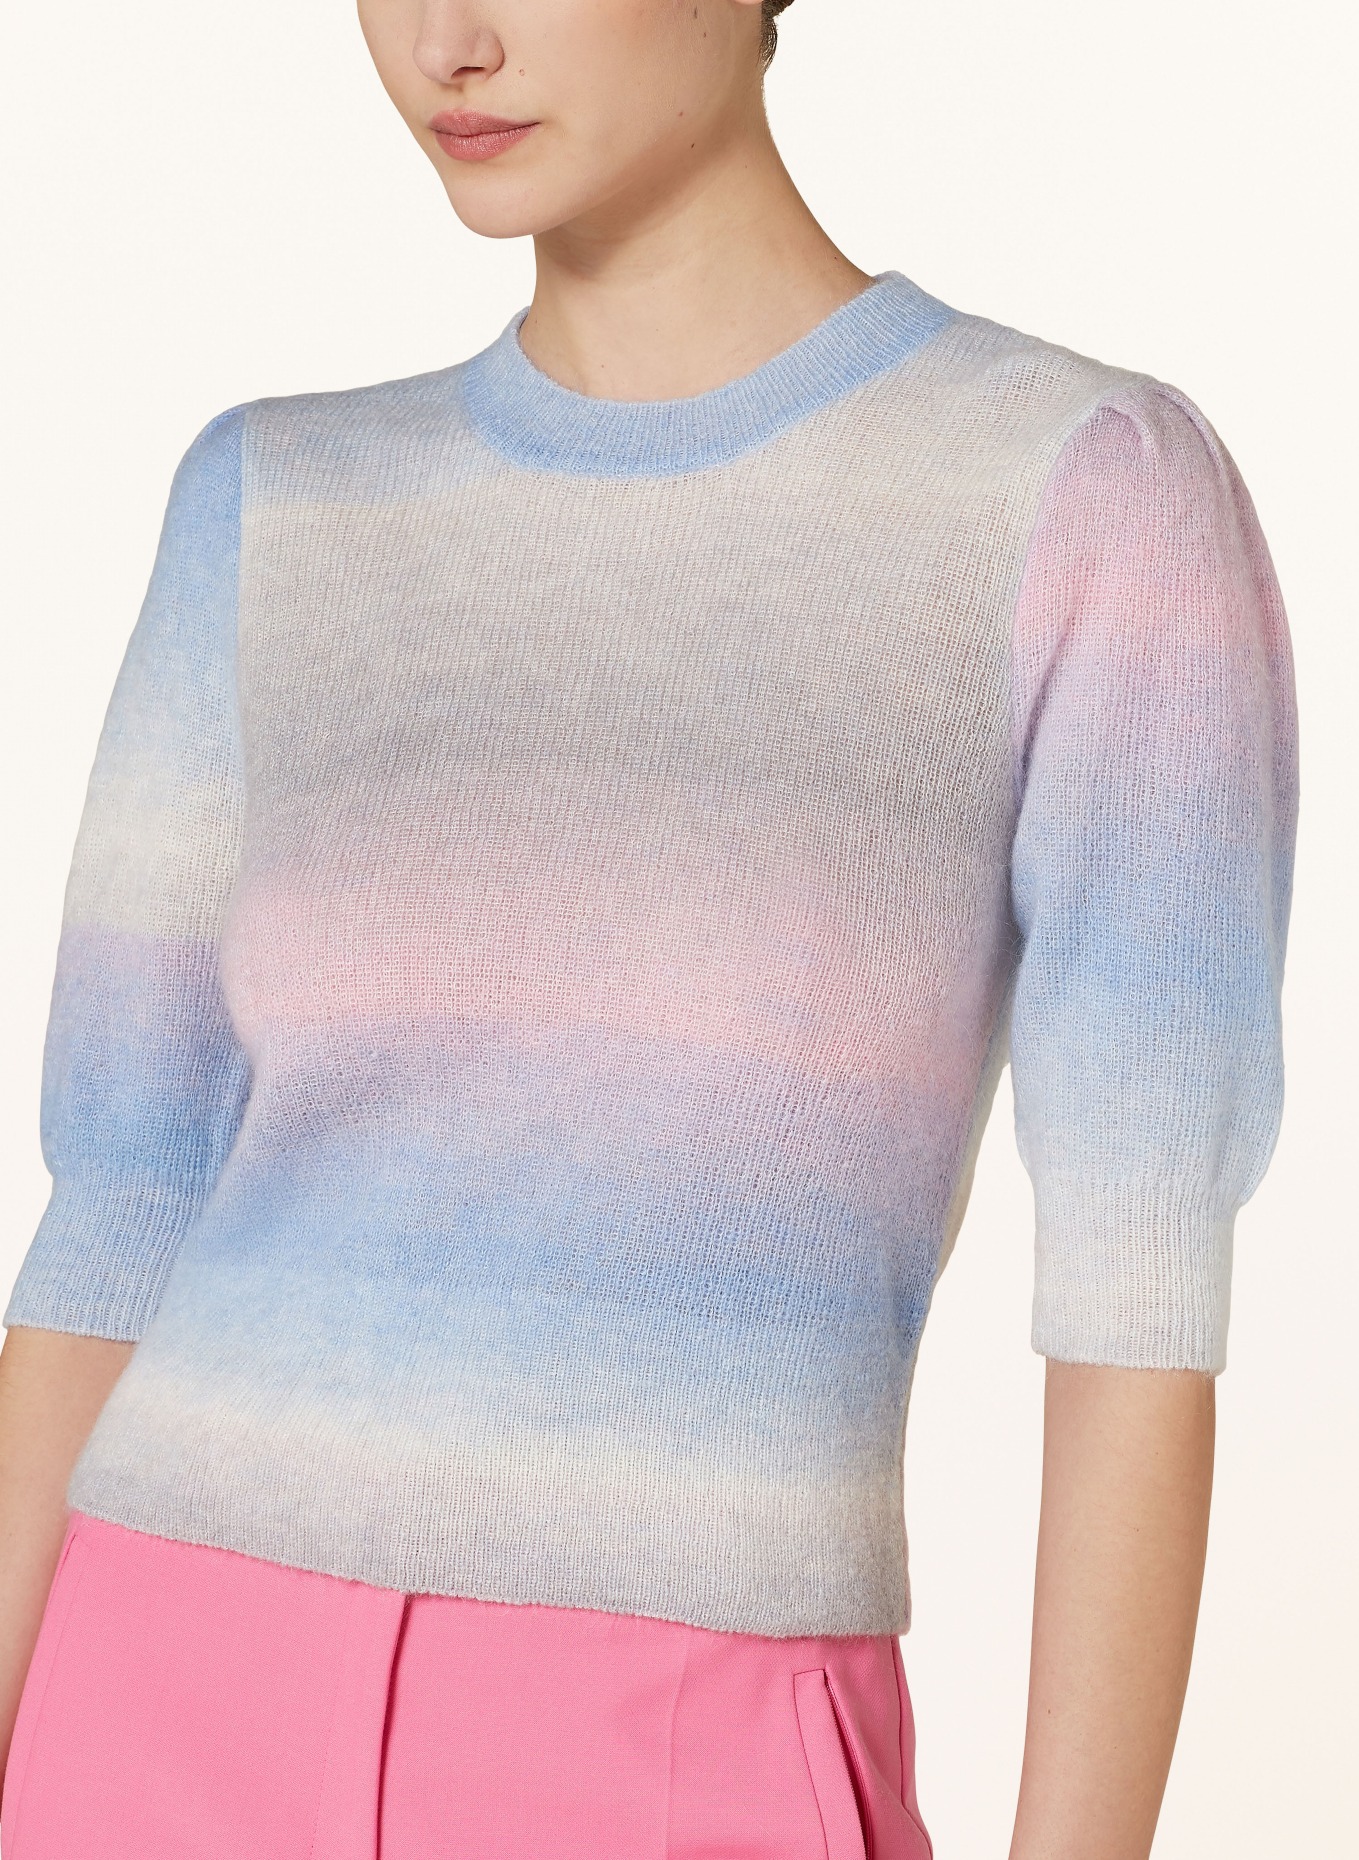 BAUM UND PFERDGARTEN Knit shirt CHELLE, Color: BLUE/ PINK/ GRAY (Image 4)